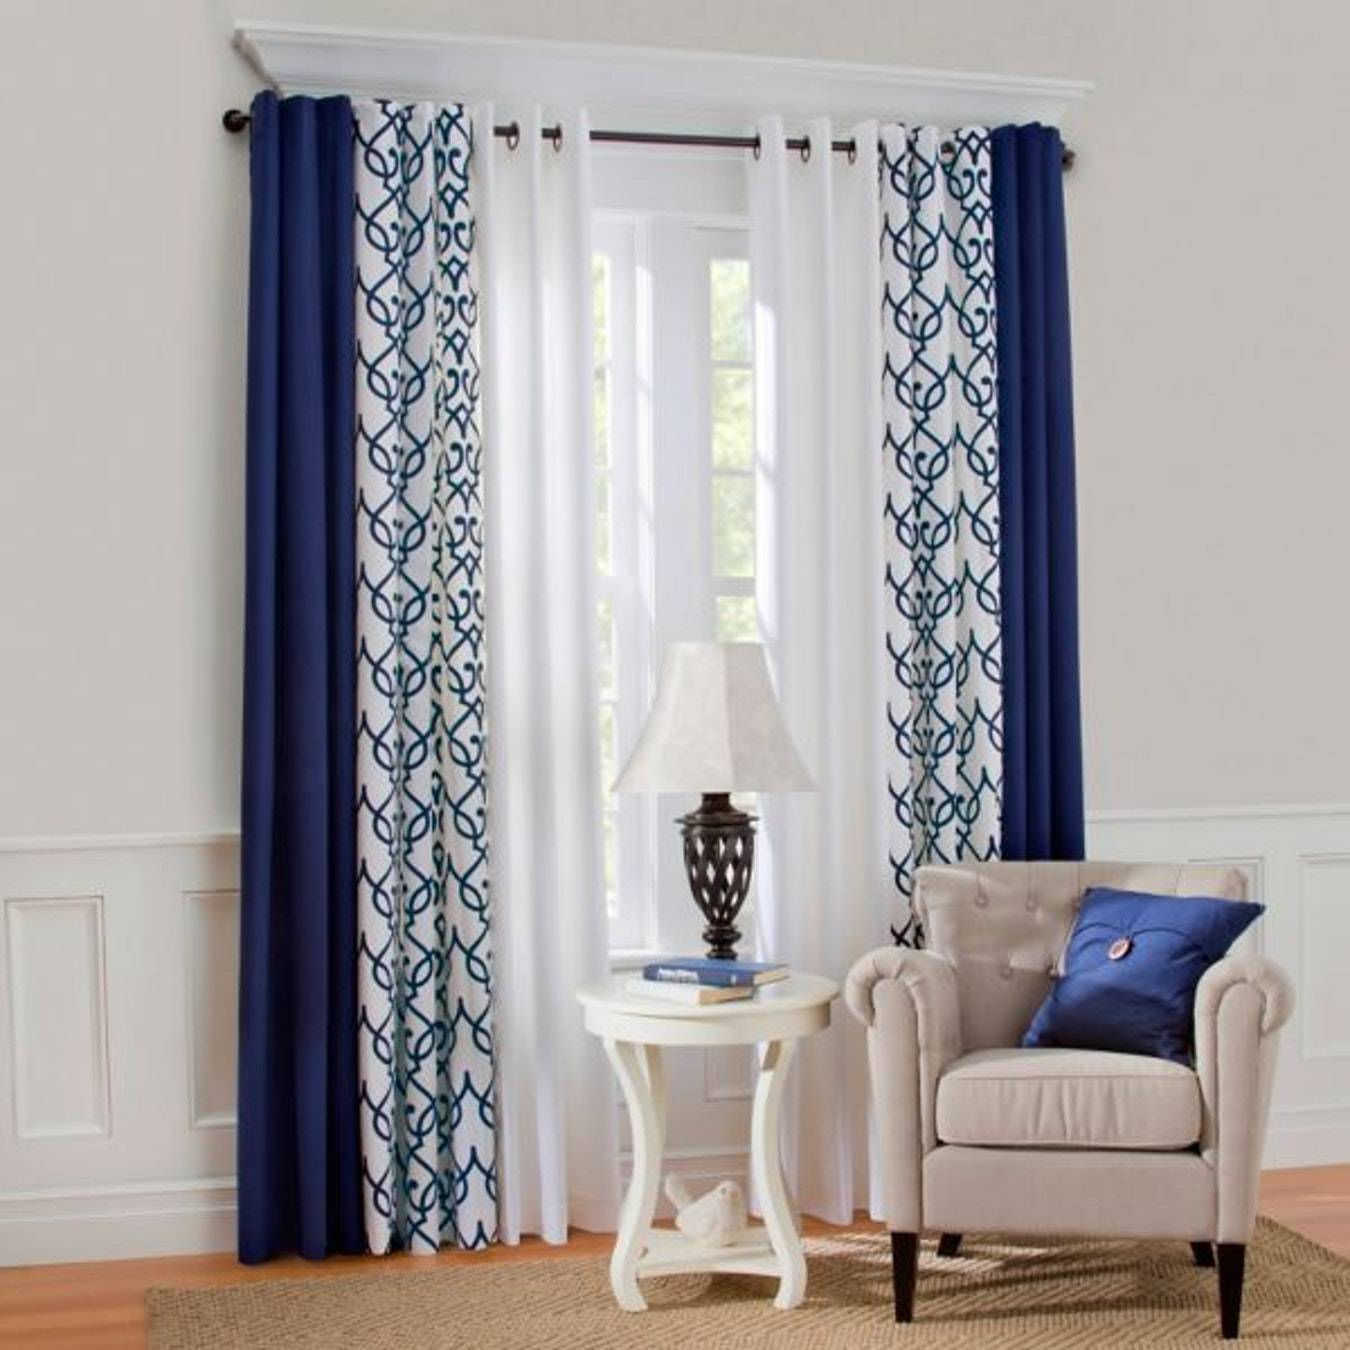  Màu xanh biển đậm thường được kết hợp với rèm lót màu trắng hoặc họa tiết xen kẽ giúp phòng sáng hơn.